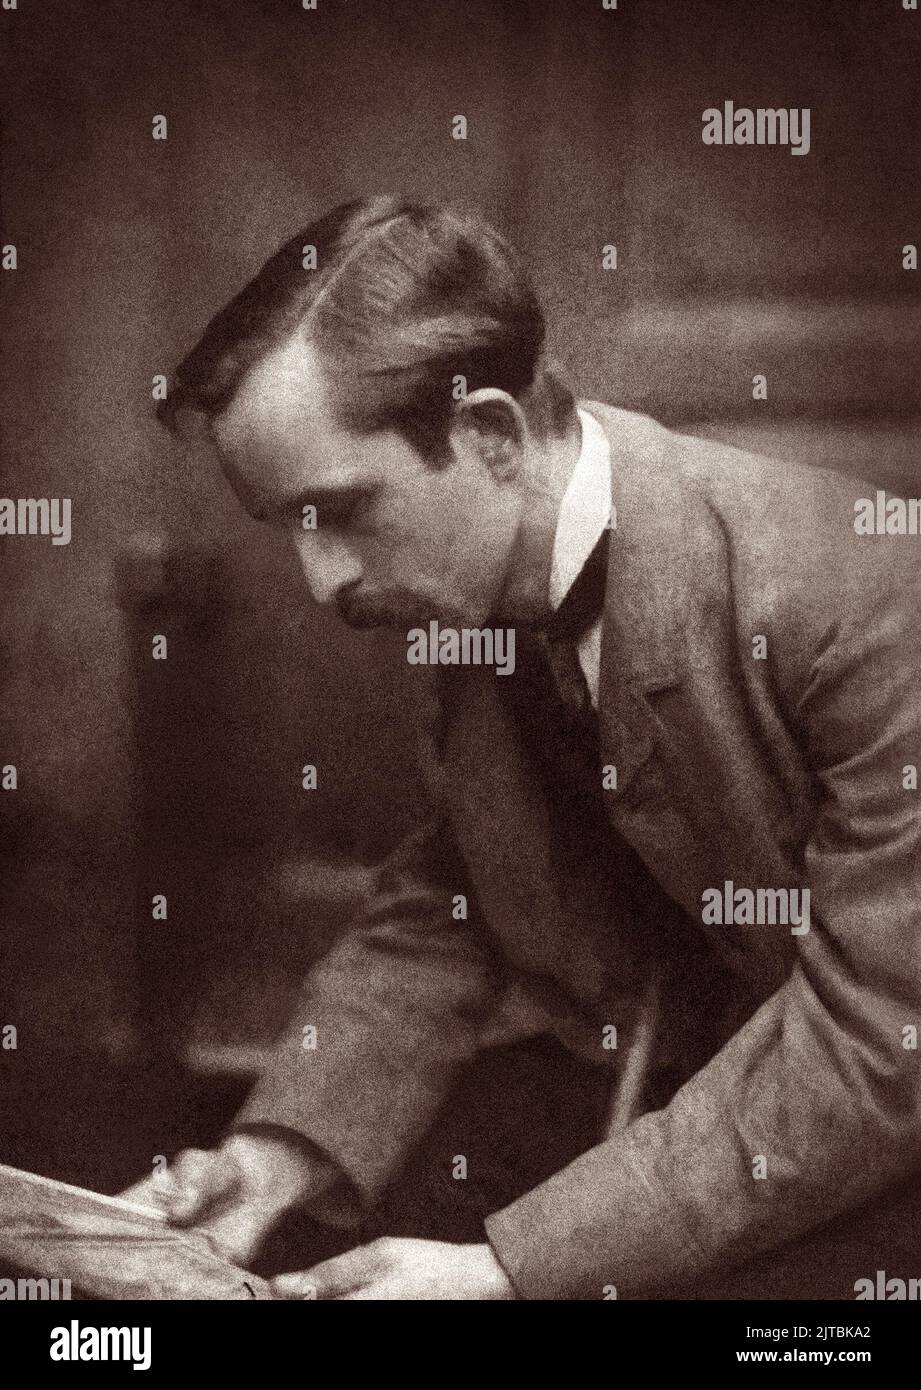 Sir James Matthew (J.M.) Barrie (1860-1937), dramaturge et romancier écossais mieux connu sous le nom d'auteur de Peter Pan, dans un portrait de Frederick Hollyer. Banque D'Images